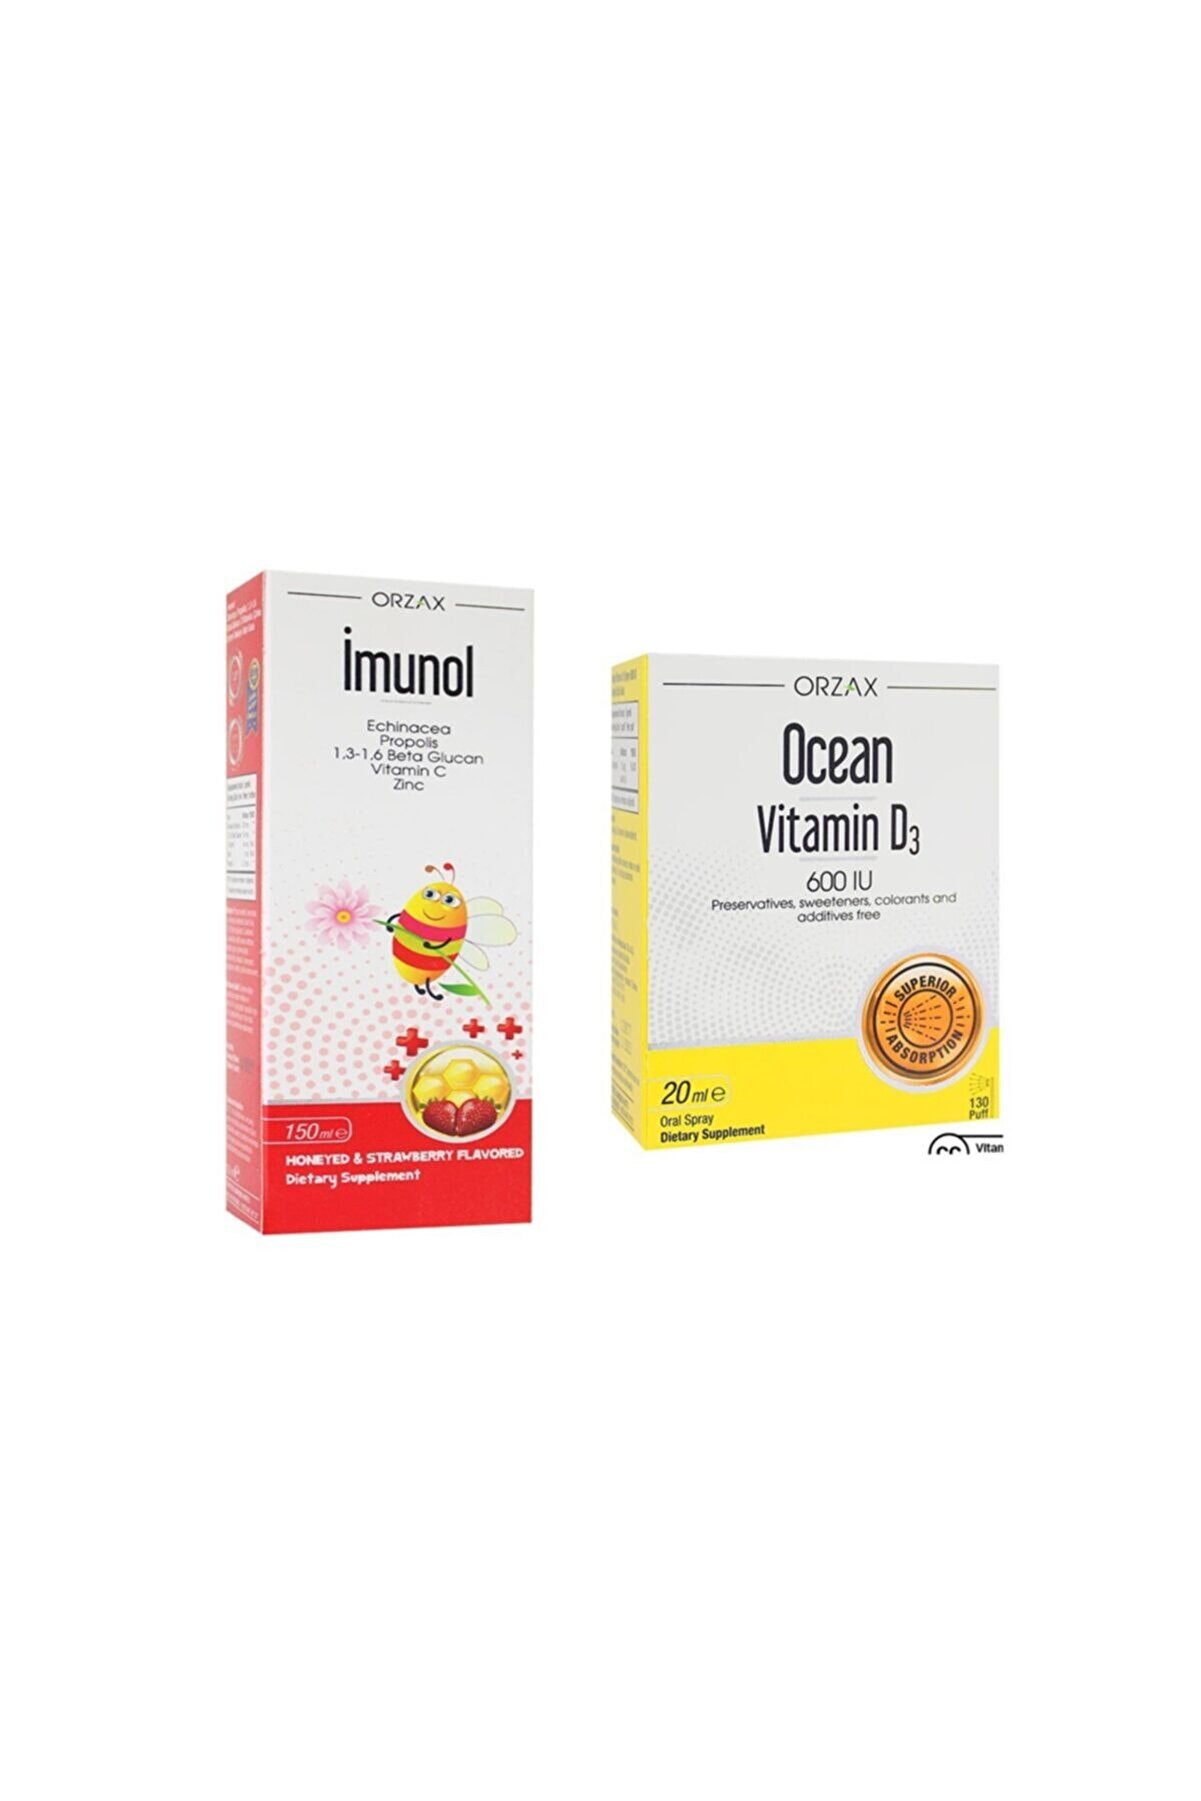 İMUNOL Imunol Şurup 150 ml Ve Ocean Vitamin D3 600 Iu Sprey 20 ml